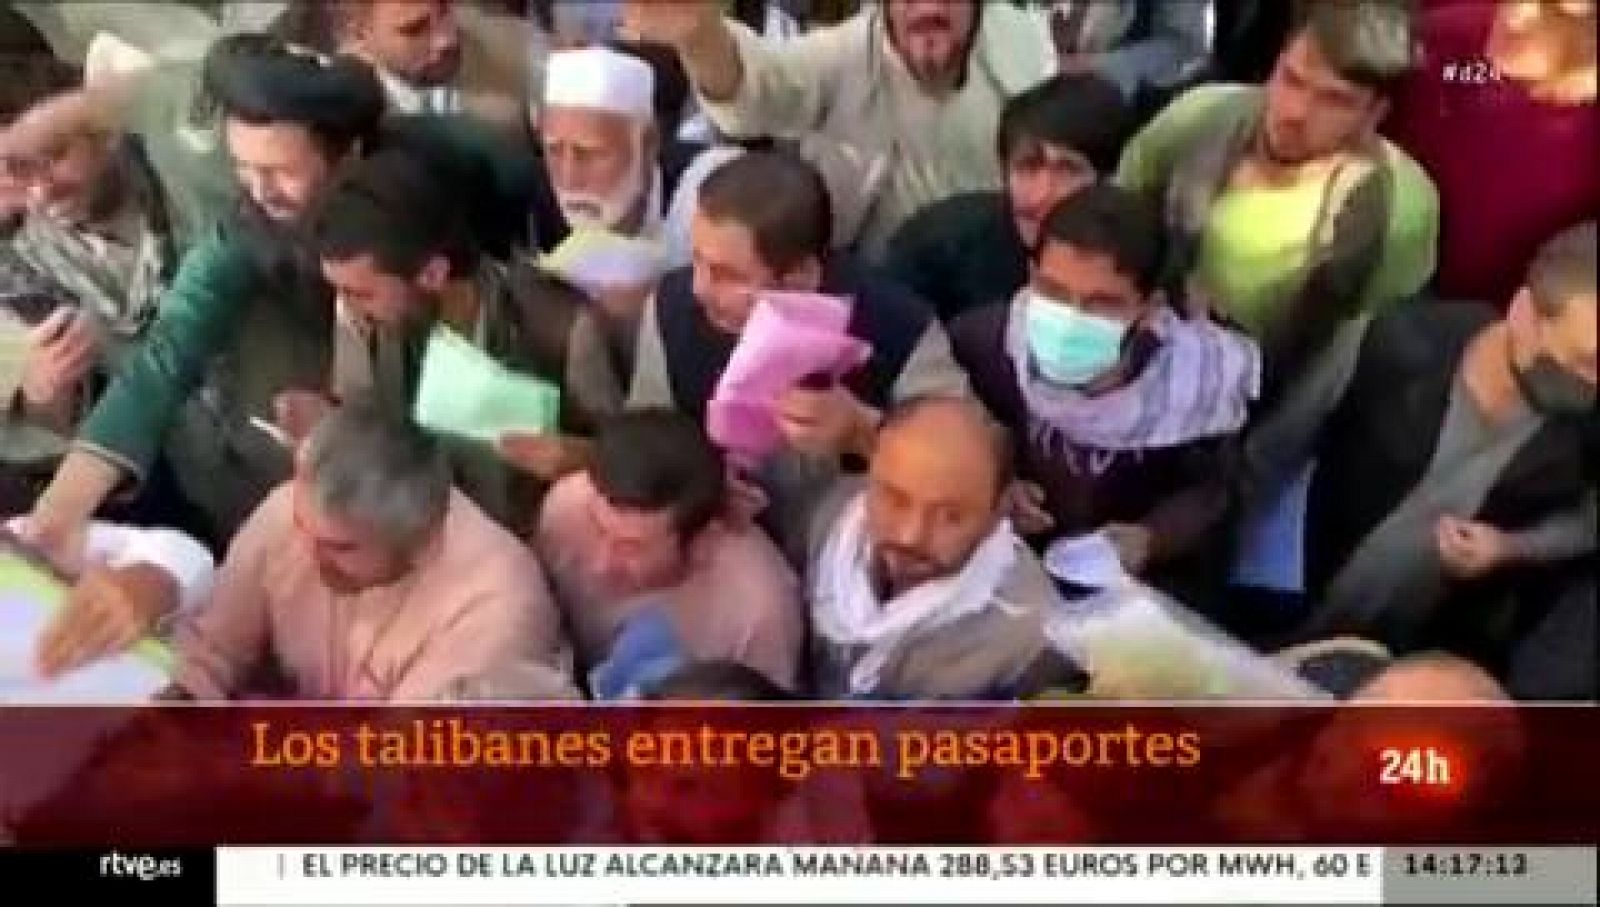 Afganistán: Los talibanes reanudan la emisión de pasaportes - Ver ahora